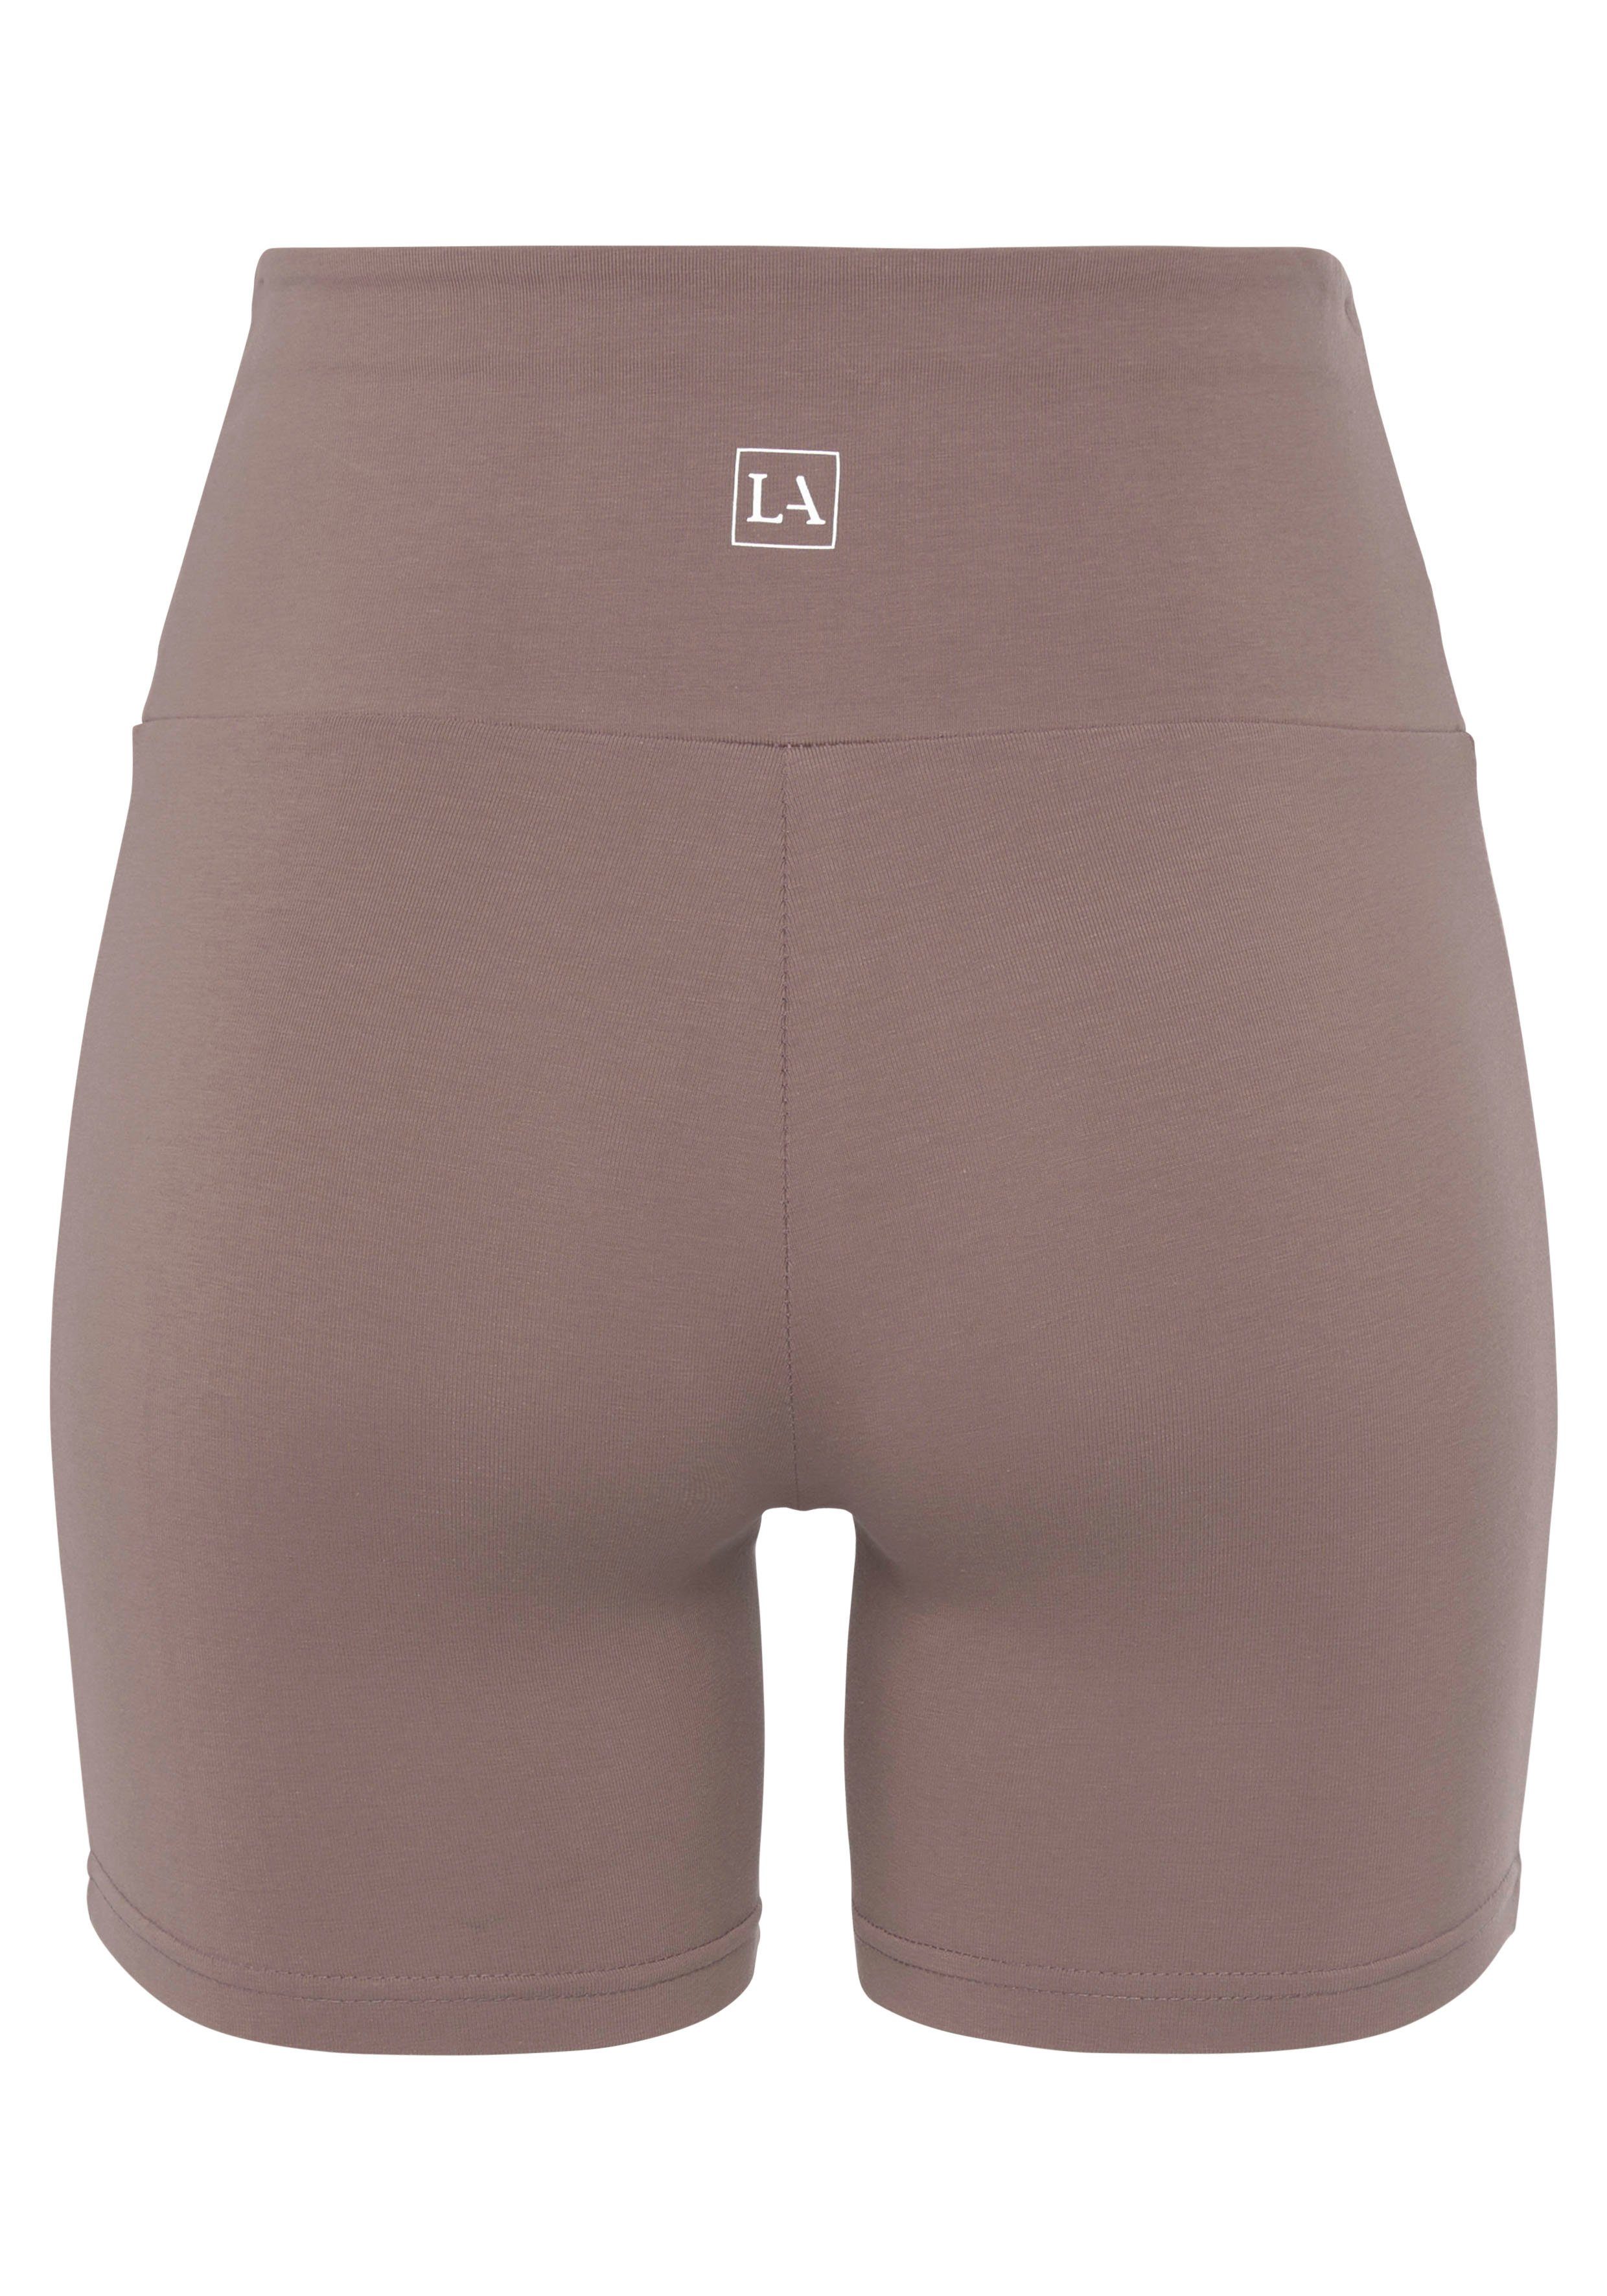 Shorts Bündchen und taupe mit breitem LASCANA Loungewear Logodruck,